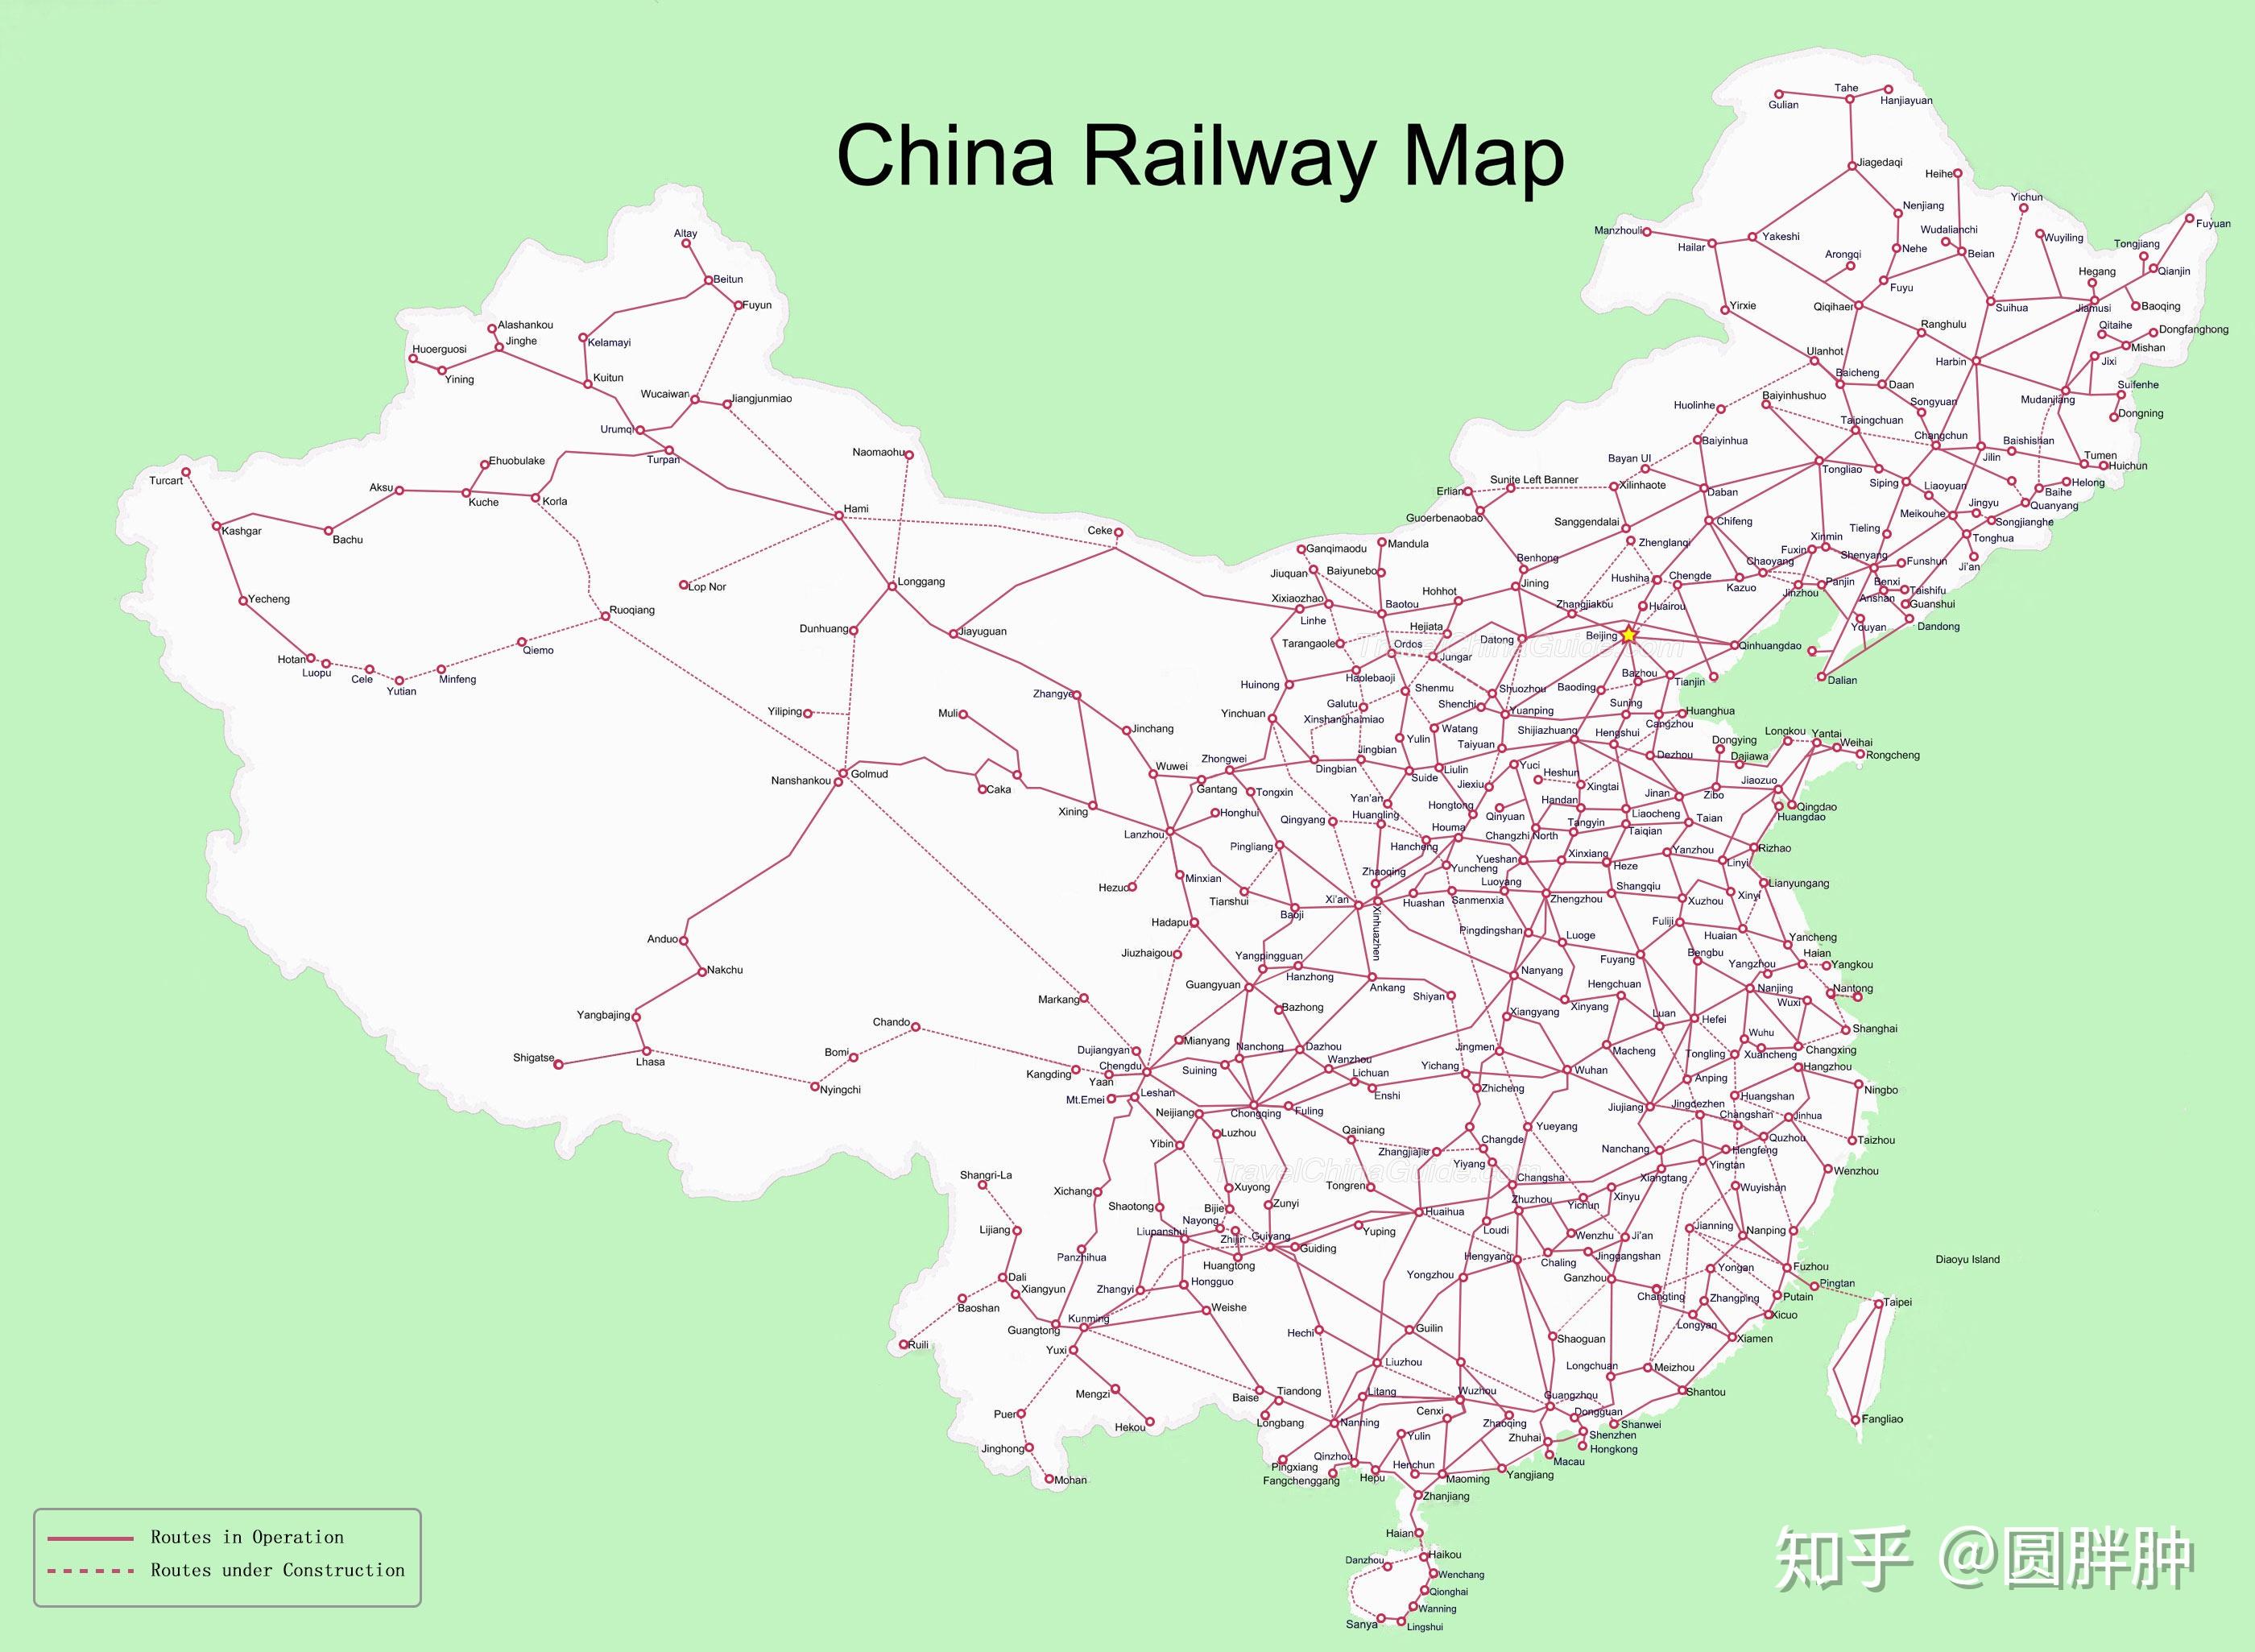 中国的高铁建设是不是盲目了?